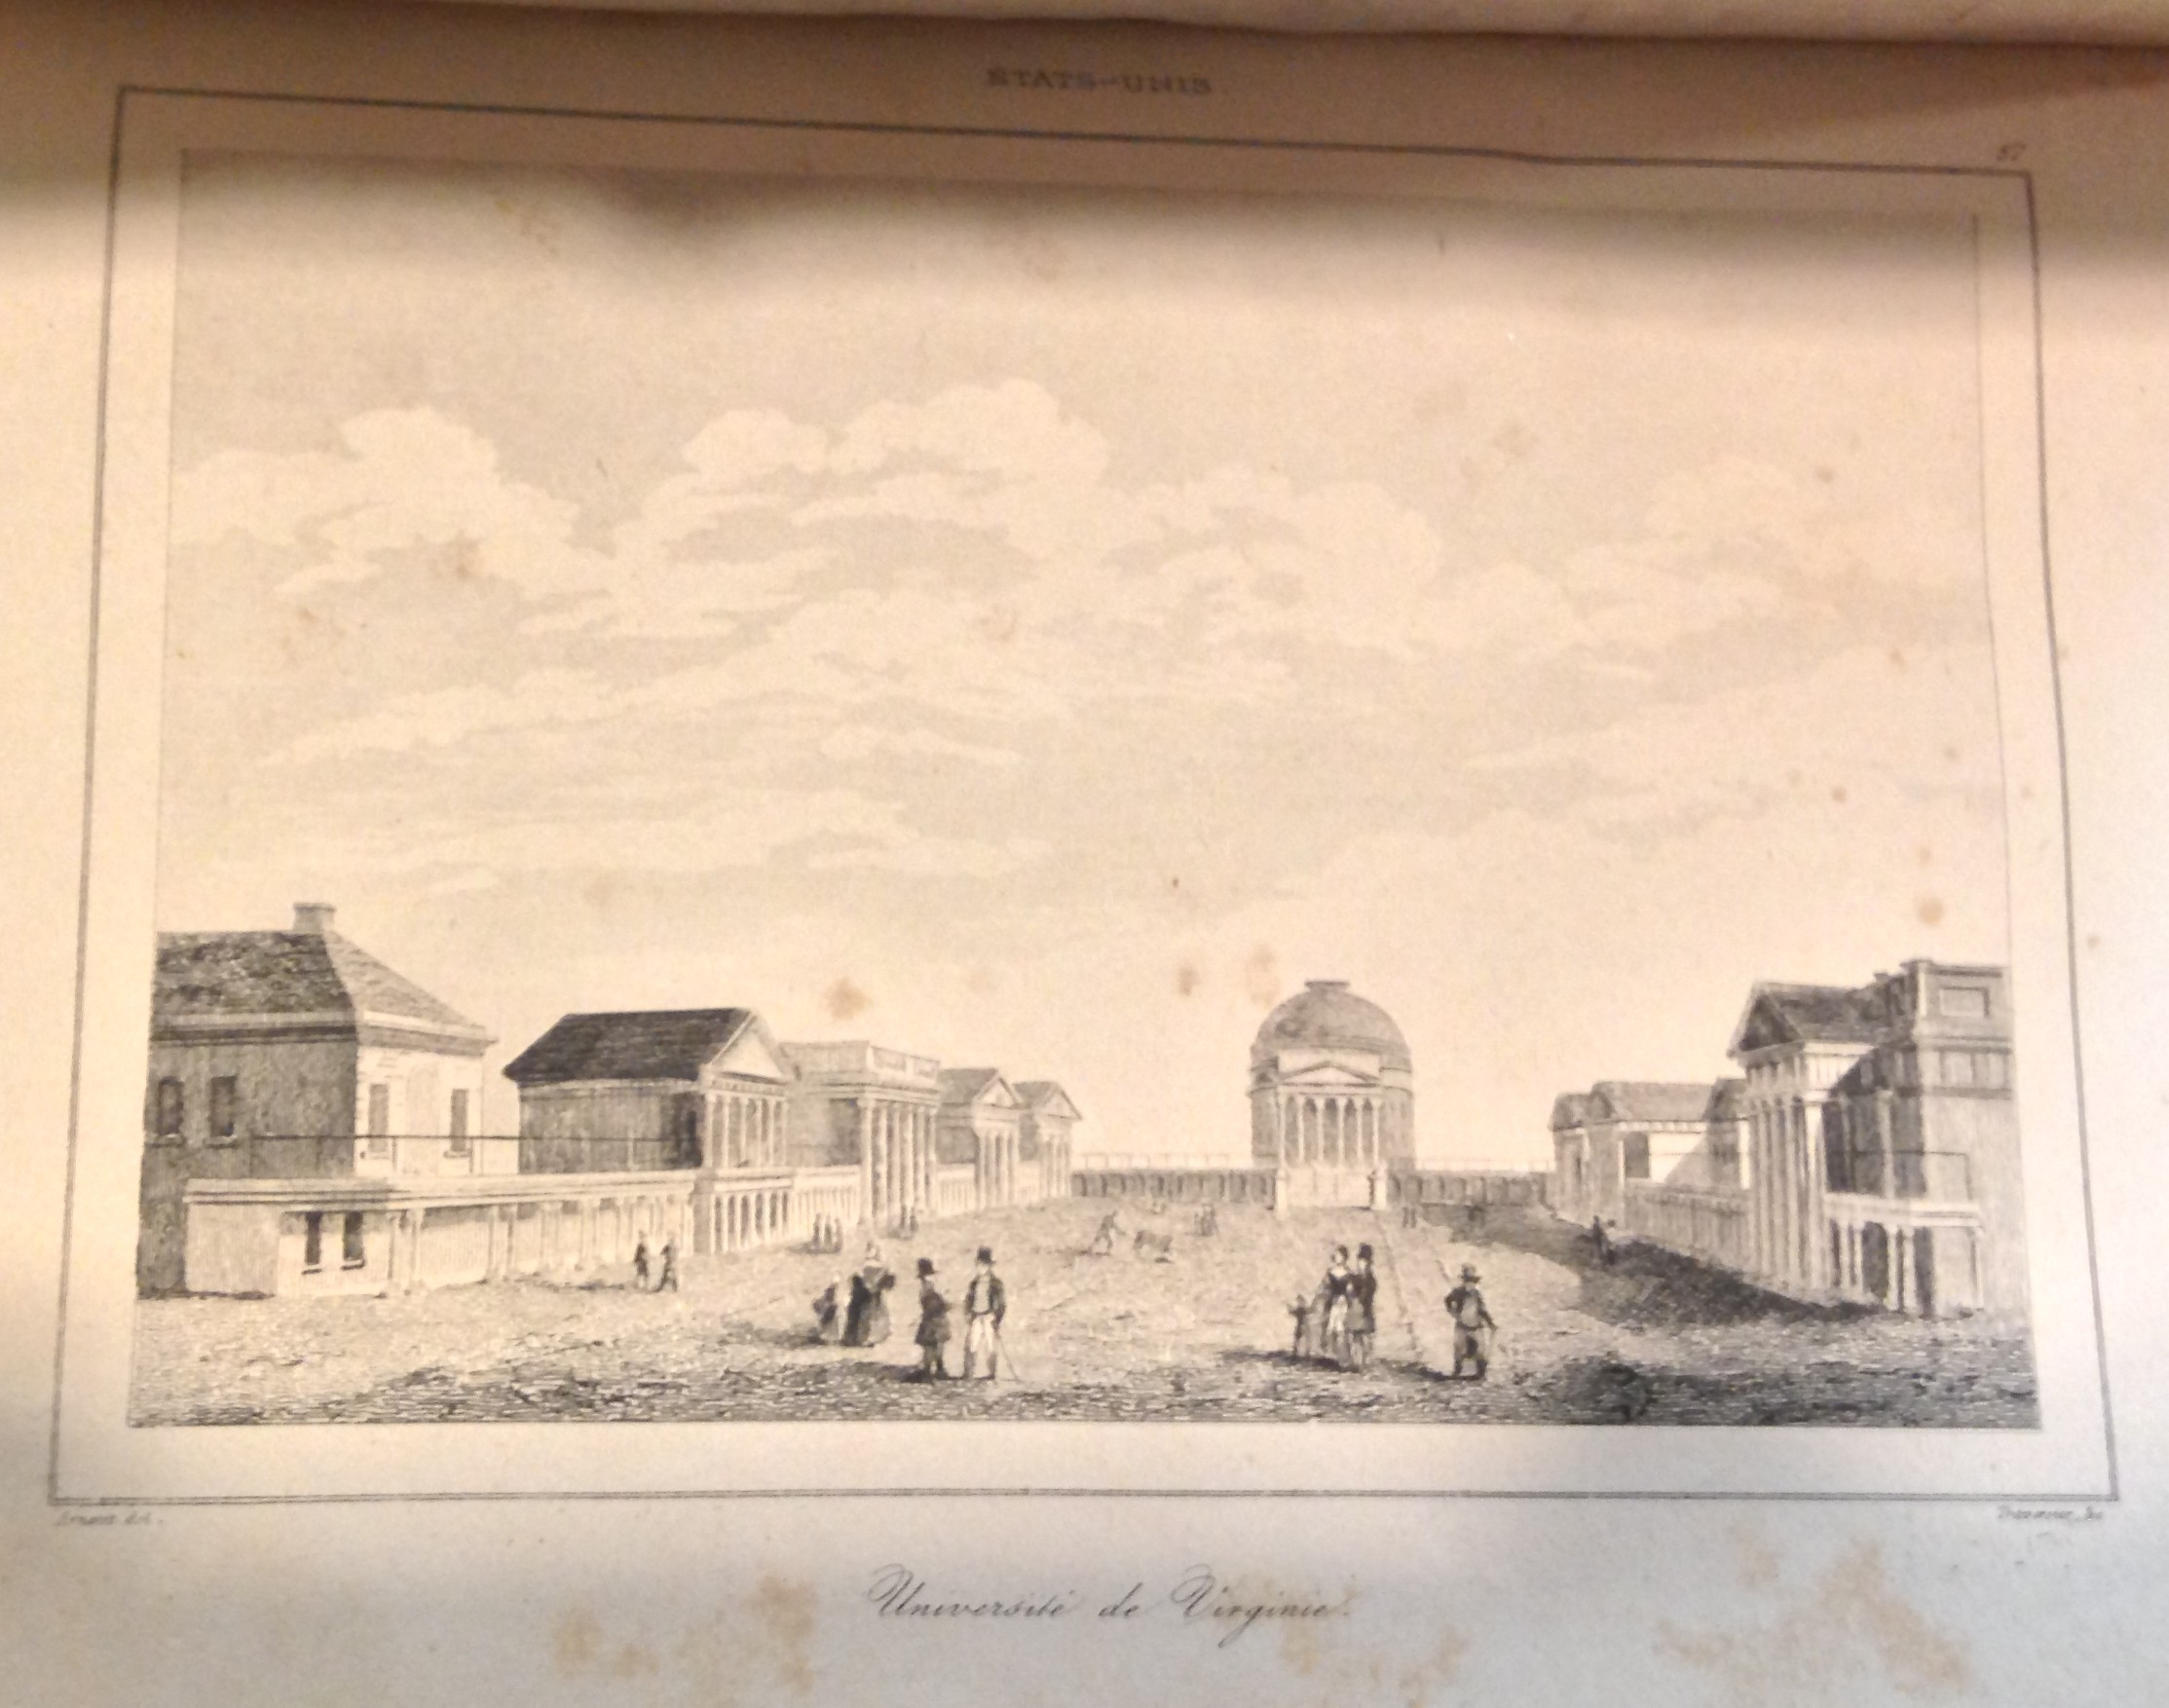 The Academical Village as it appeared in Roux de Rochelle, États-Unis de’Amérique (Paris, 1837) (E178 .R82 1837)